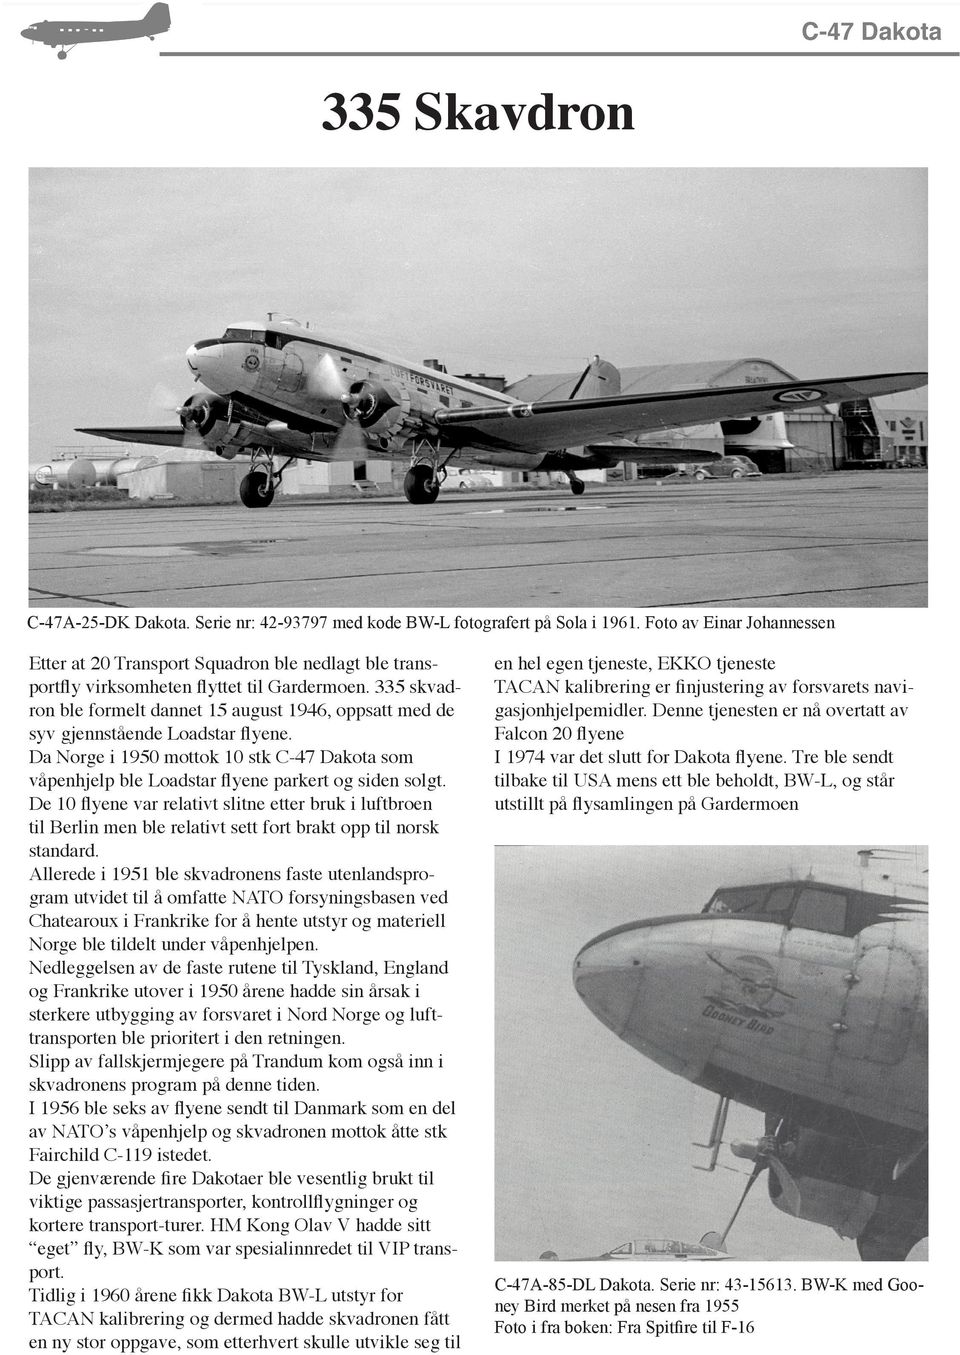 335 skvadron ble formelt dannet 15 august 1946, oppsatt med de syv gjennstående Loadstar flyene. Da Norge i 1950 mottok 10 stk C-47 Dakota som våpenhjelp ble Loadstar flyene parkert og siden solgt.